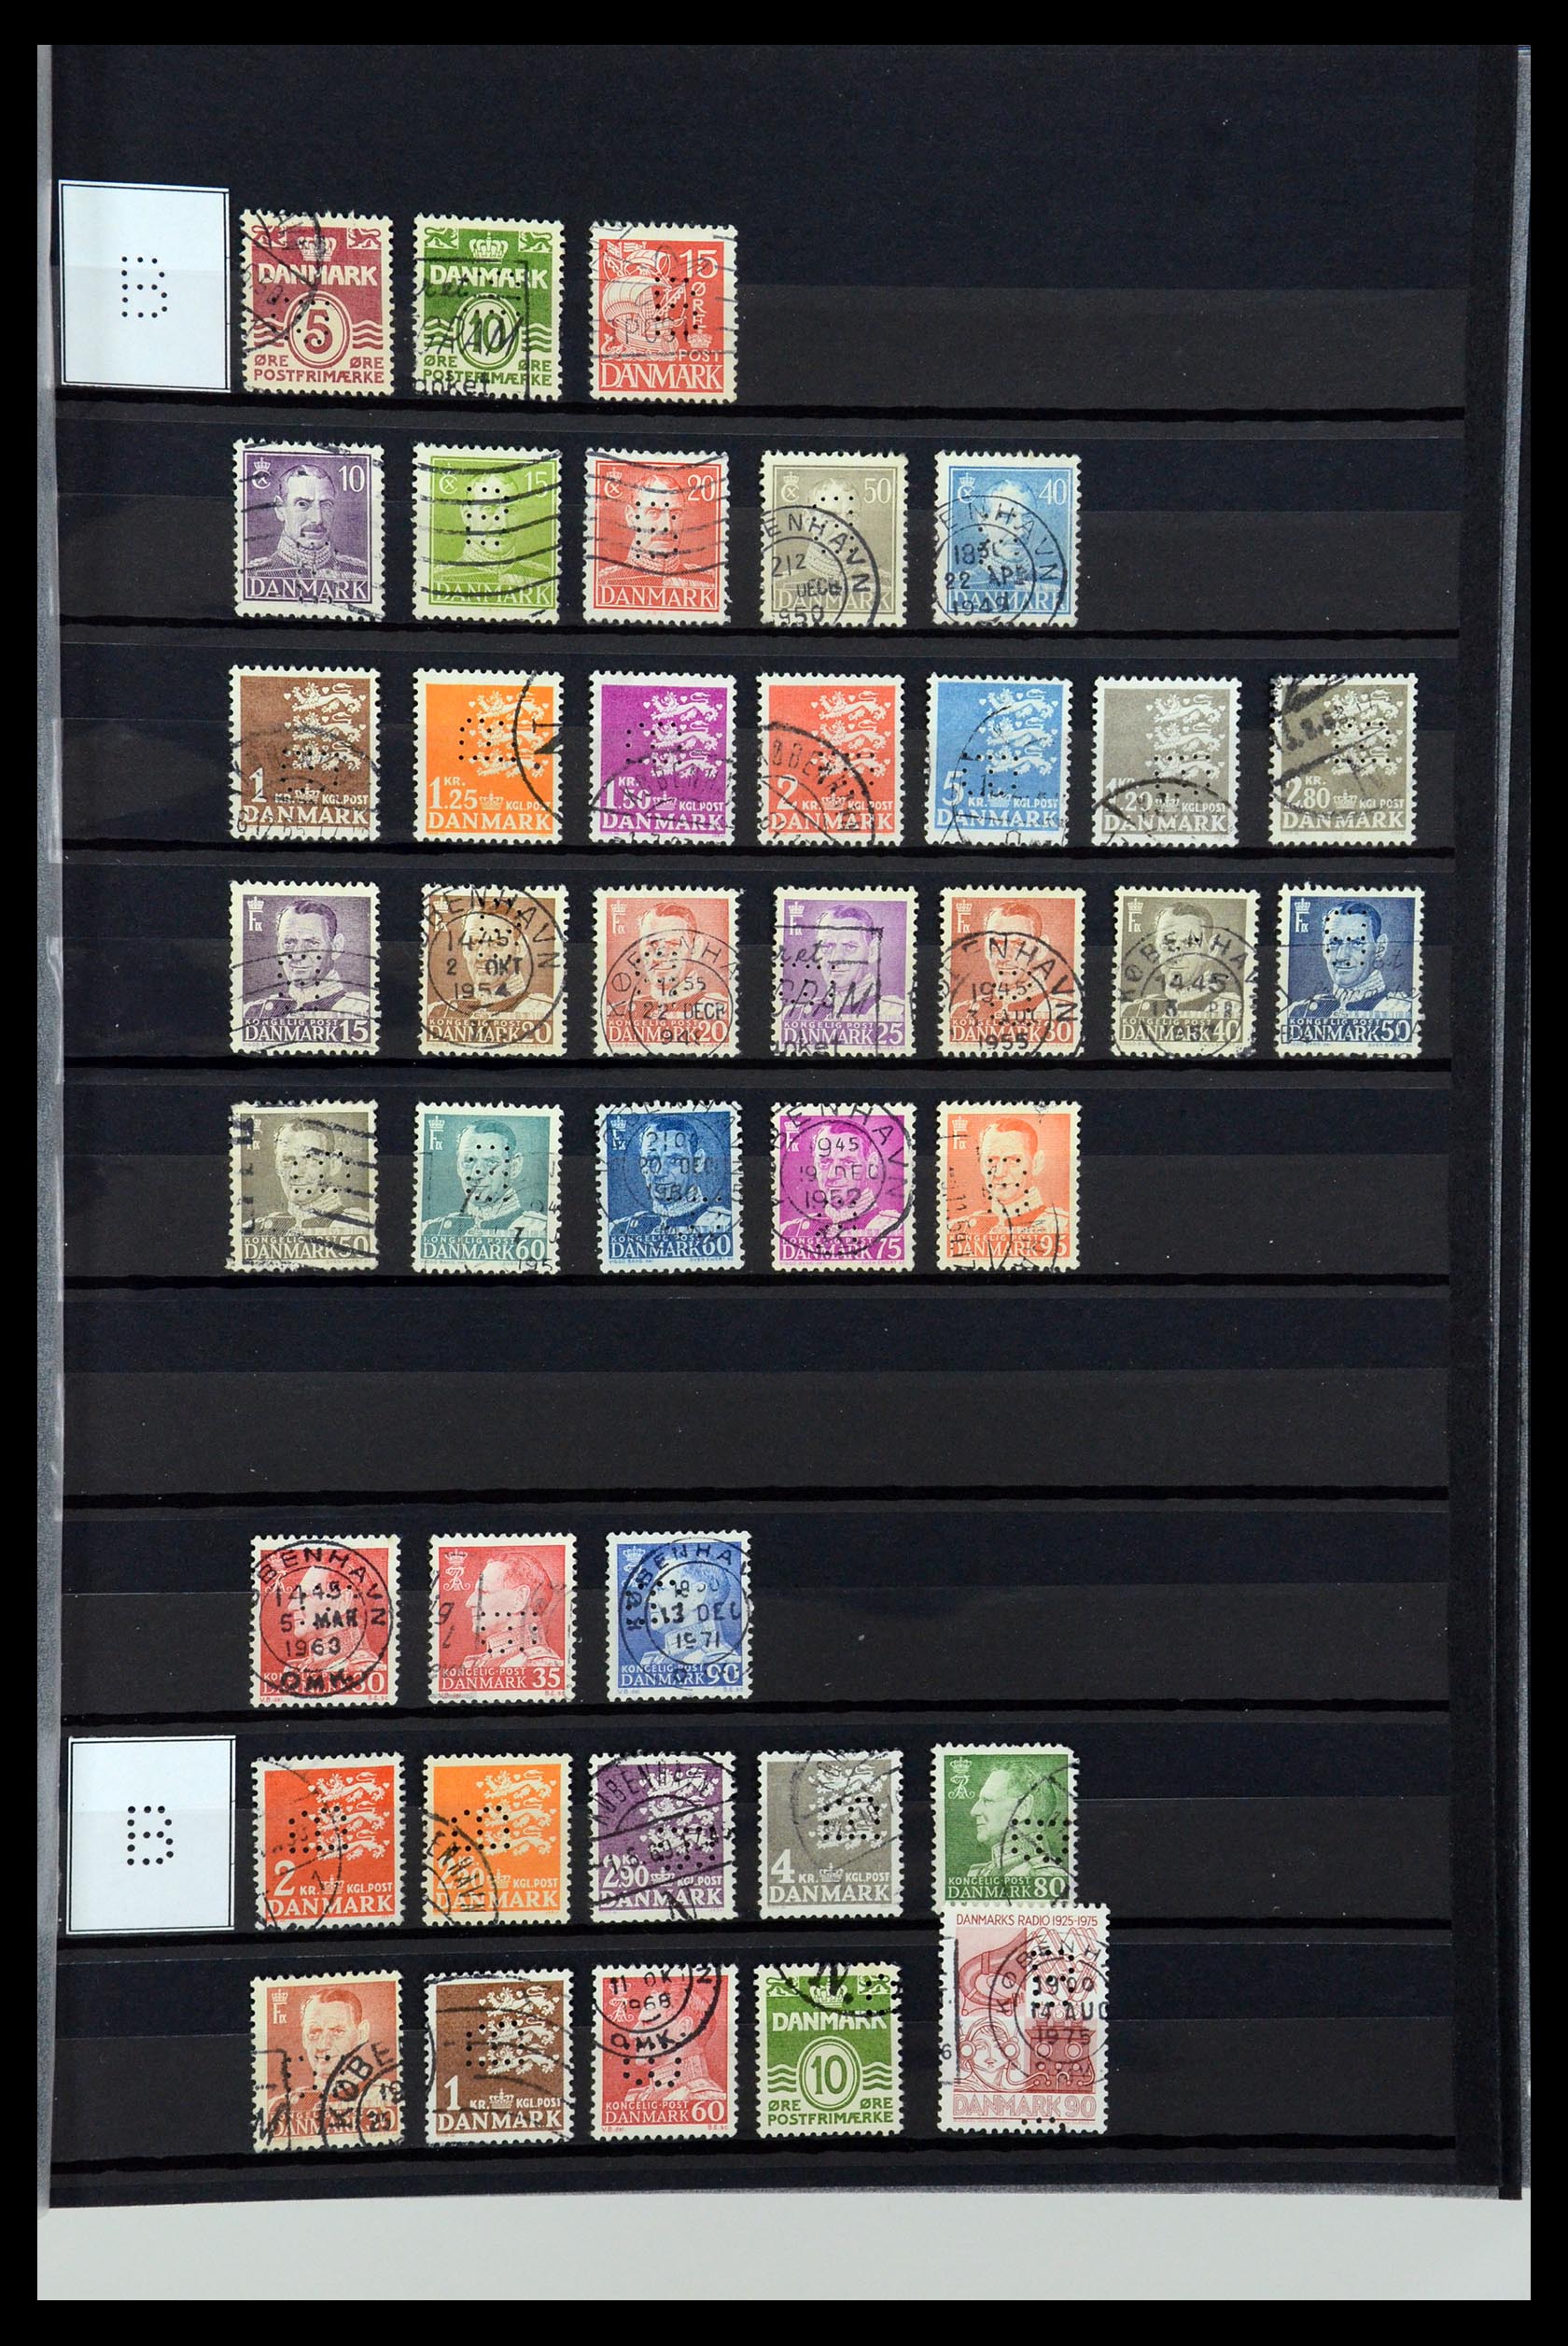 36396 013 - Postzegelverzameling 36396 Denemarken perfins.